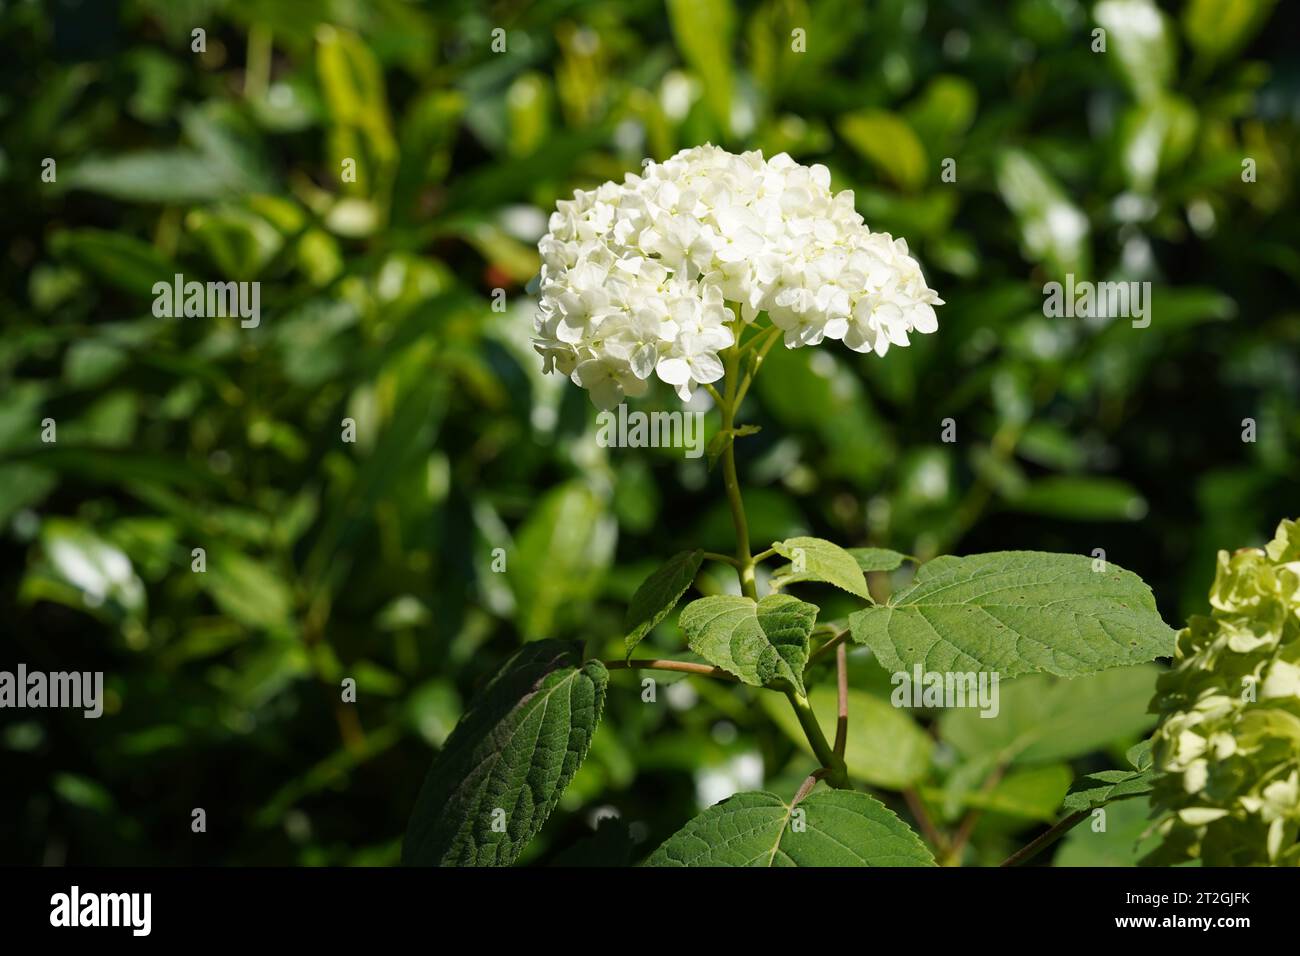 Hortensie oder auch Hortensia genannt, mit weißen Blüten. Ein Detail der Blütenstände mit grünen Blättern. Stockfoto